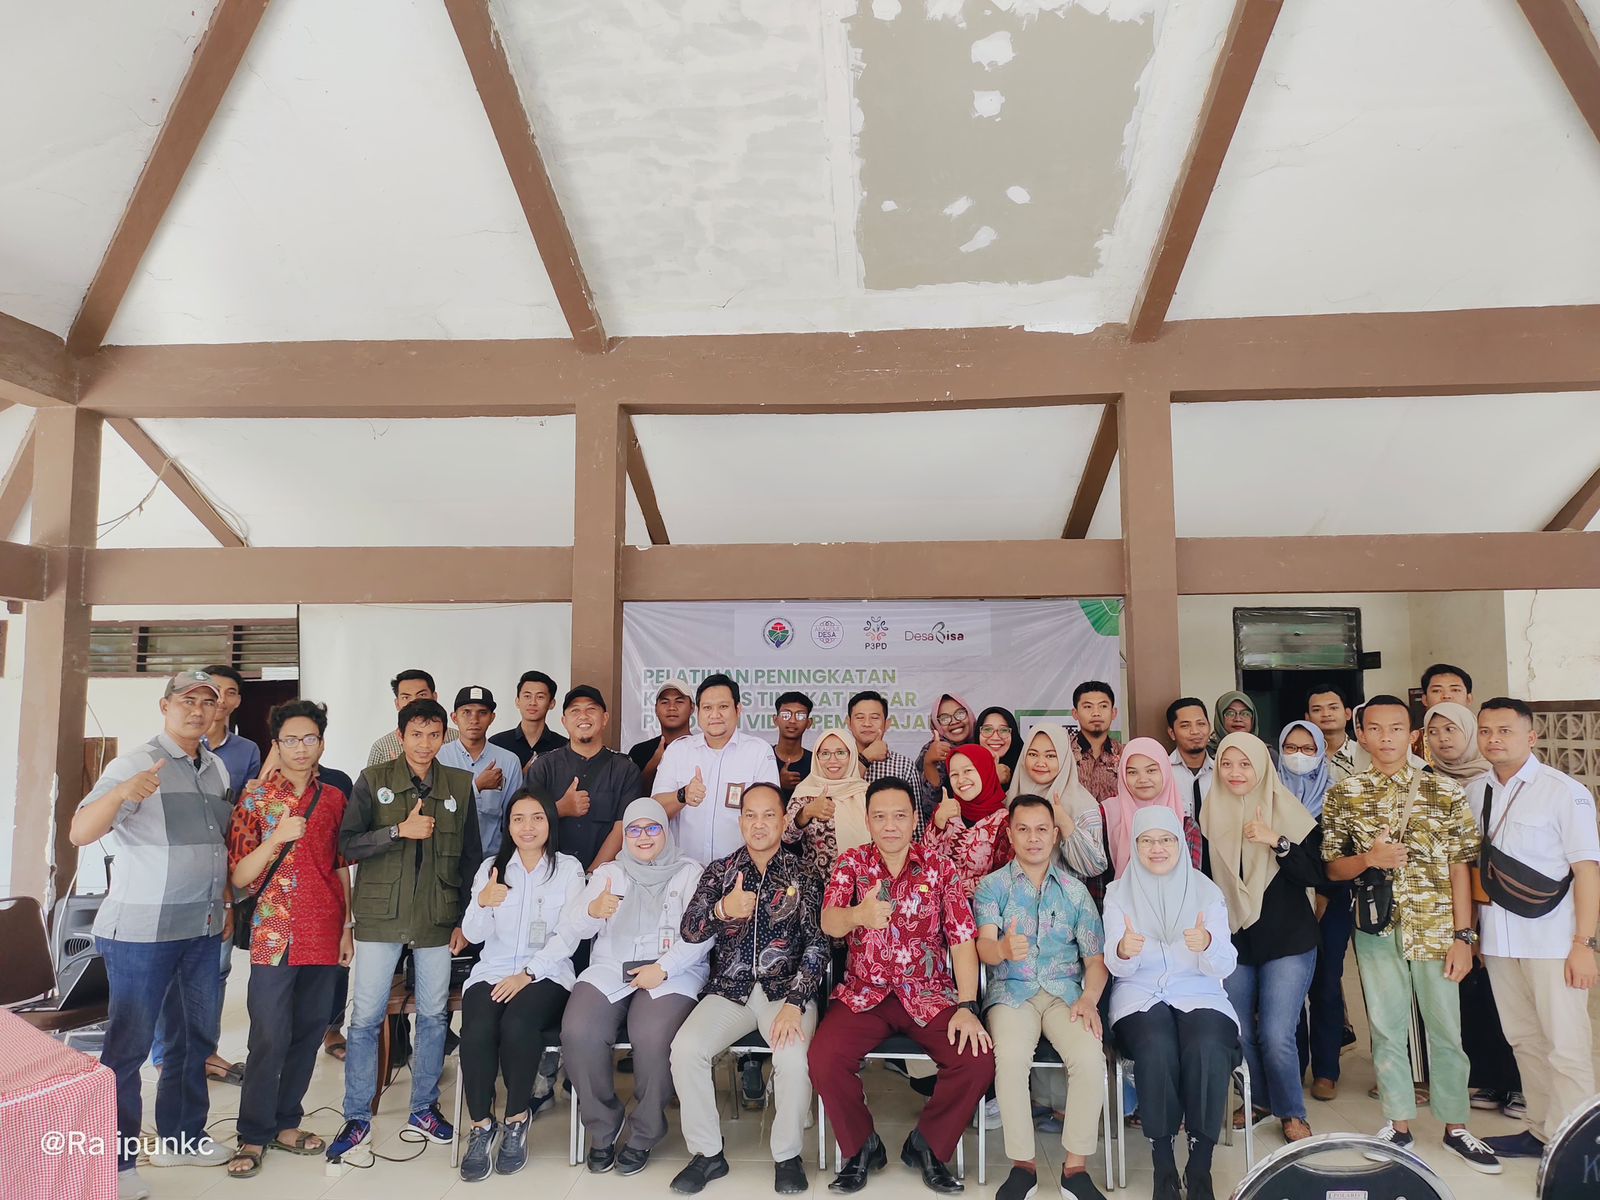 Dukung Tercapainya SDG’s dan Program Smart Village, Kemendes Latih 83 Konten Kreator Desa di Bangkalan